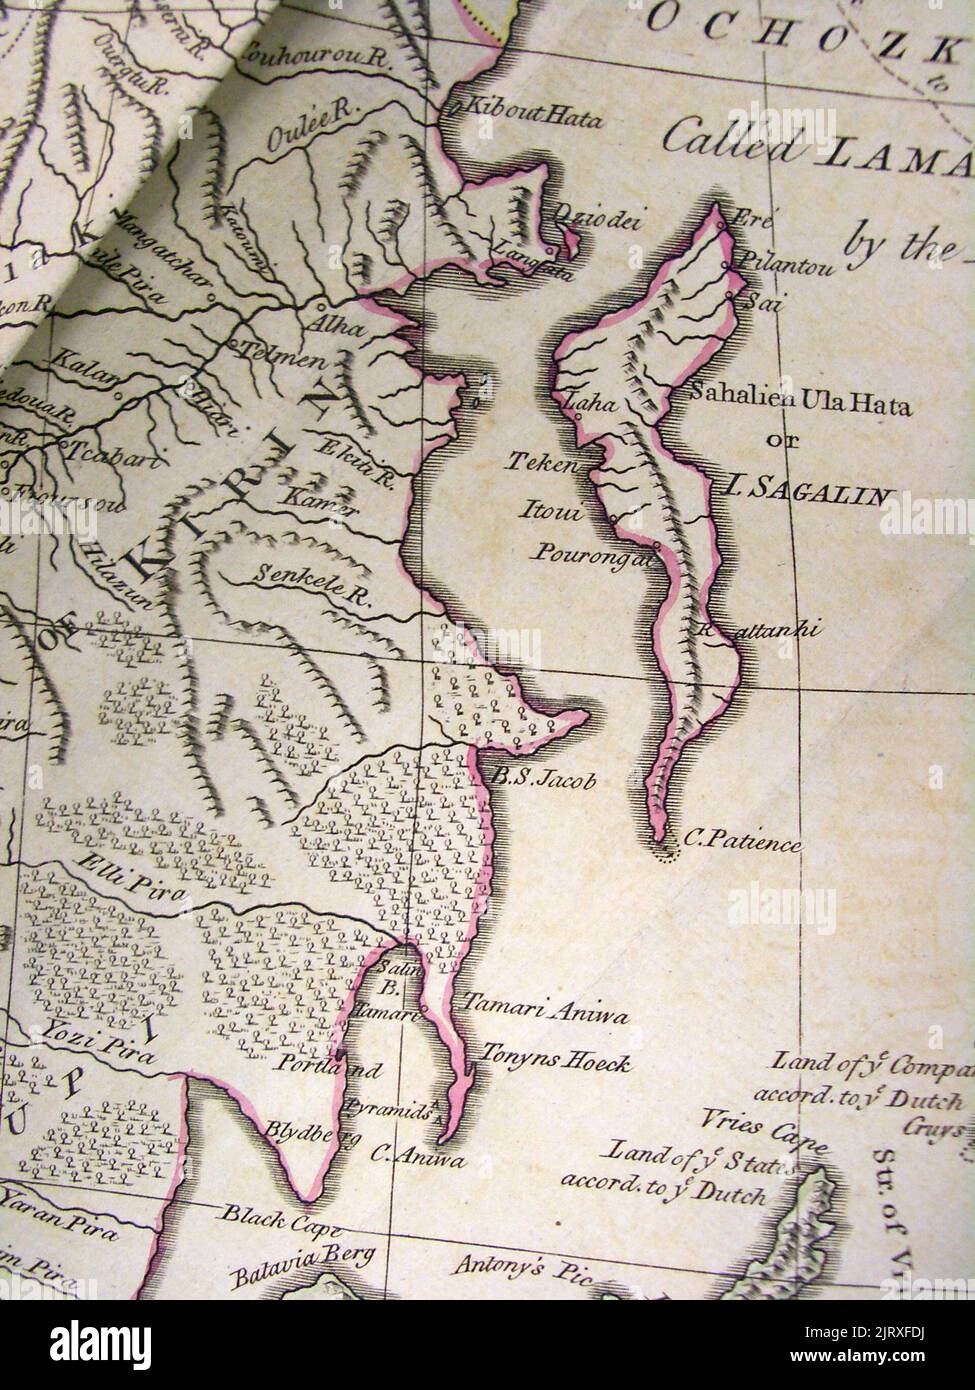 Un frammento della mappa dell'Impero Russo, che si dice sia basato sul lavoro di d'Anville, in "Atlante che descrive l'intero universo" di Thomas Kithen. Sakhalin è chiamato 'Sahalien Ula Hata o I. Sagalin - Isola di Sakhalin, 1773 Foto Stock